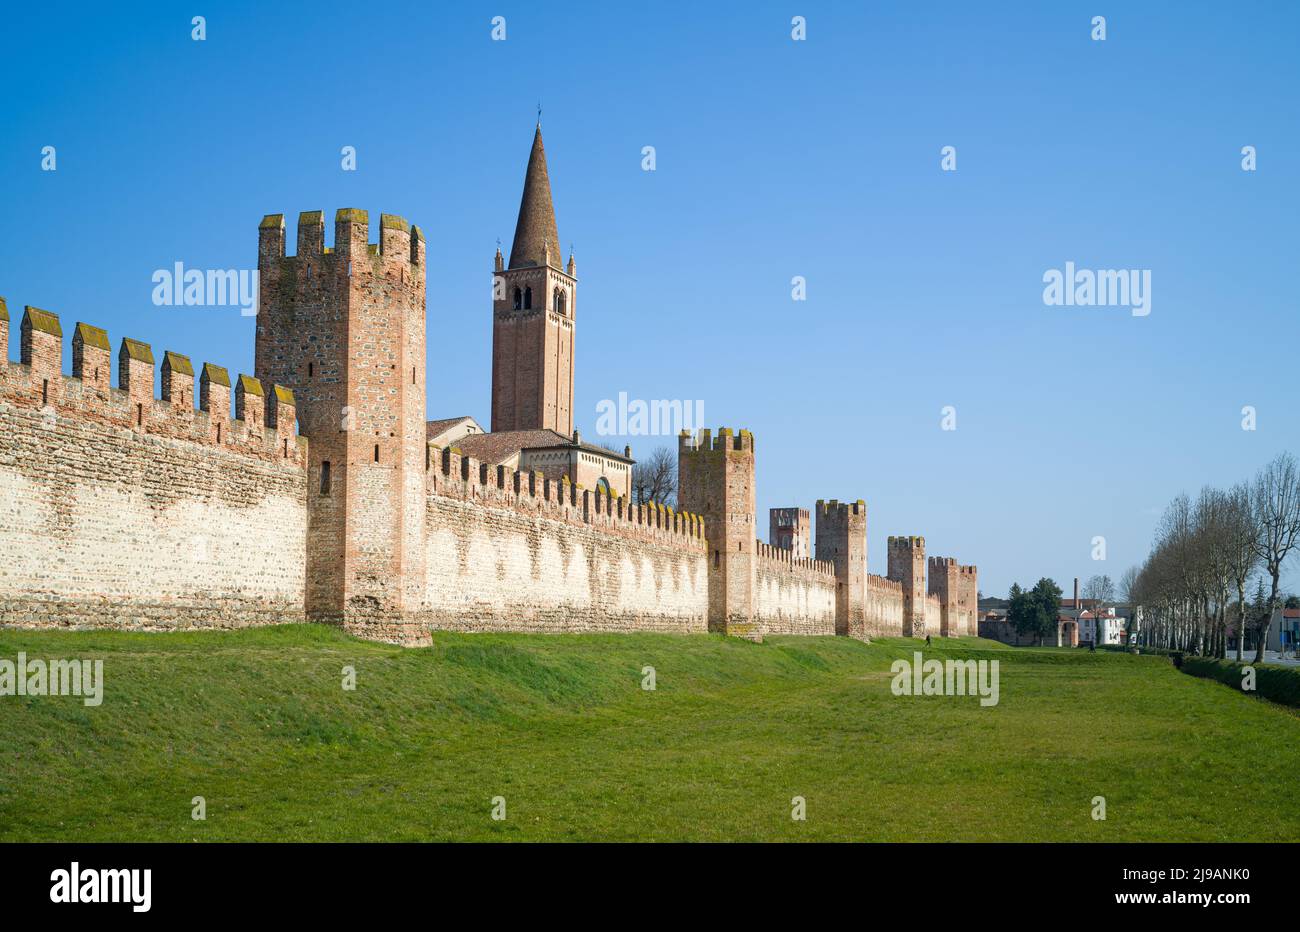 Italia, Montagnana, las murallas medievales que rodean la ciudad con el campanario de la iglesia de San Francesco Foto de stock